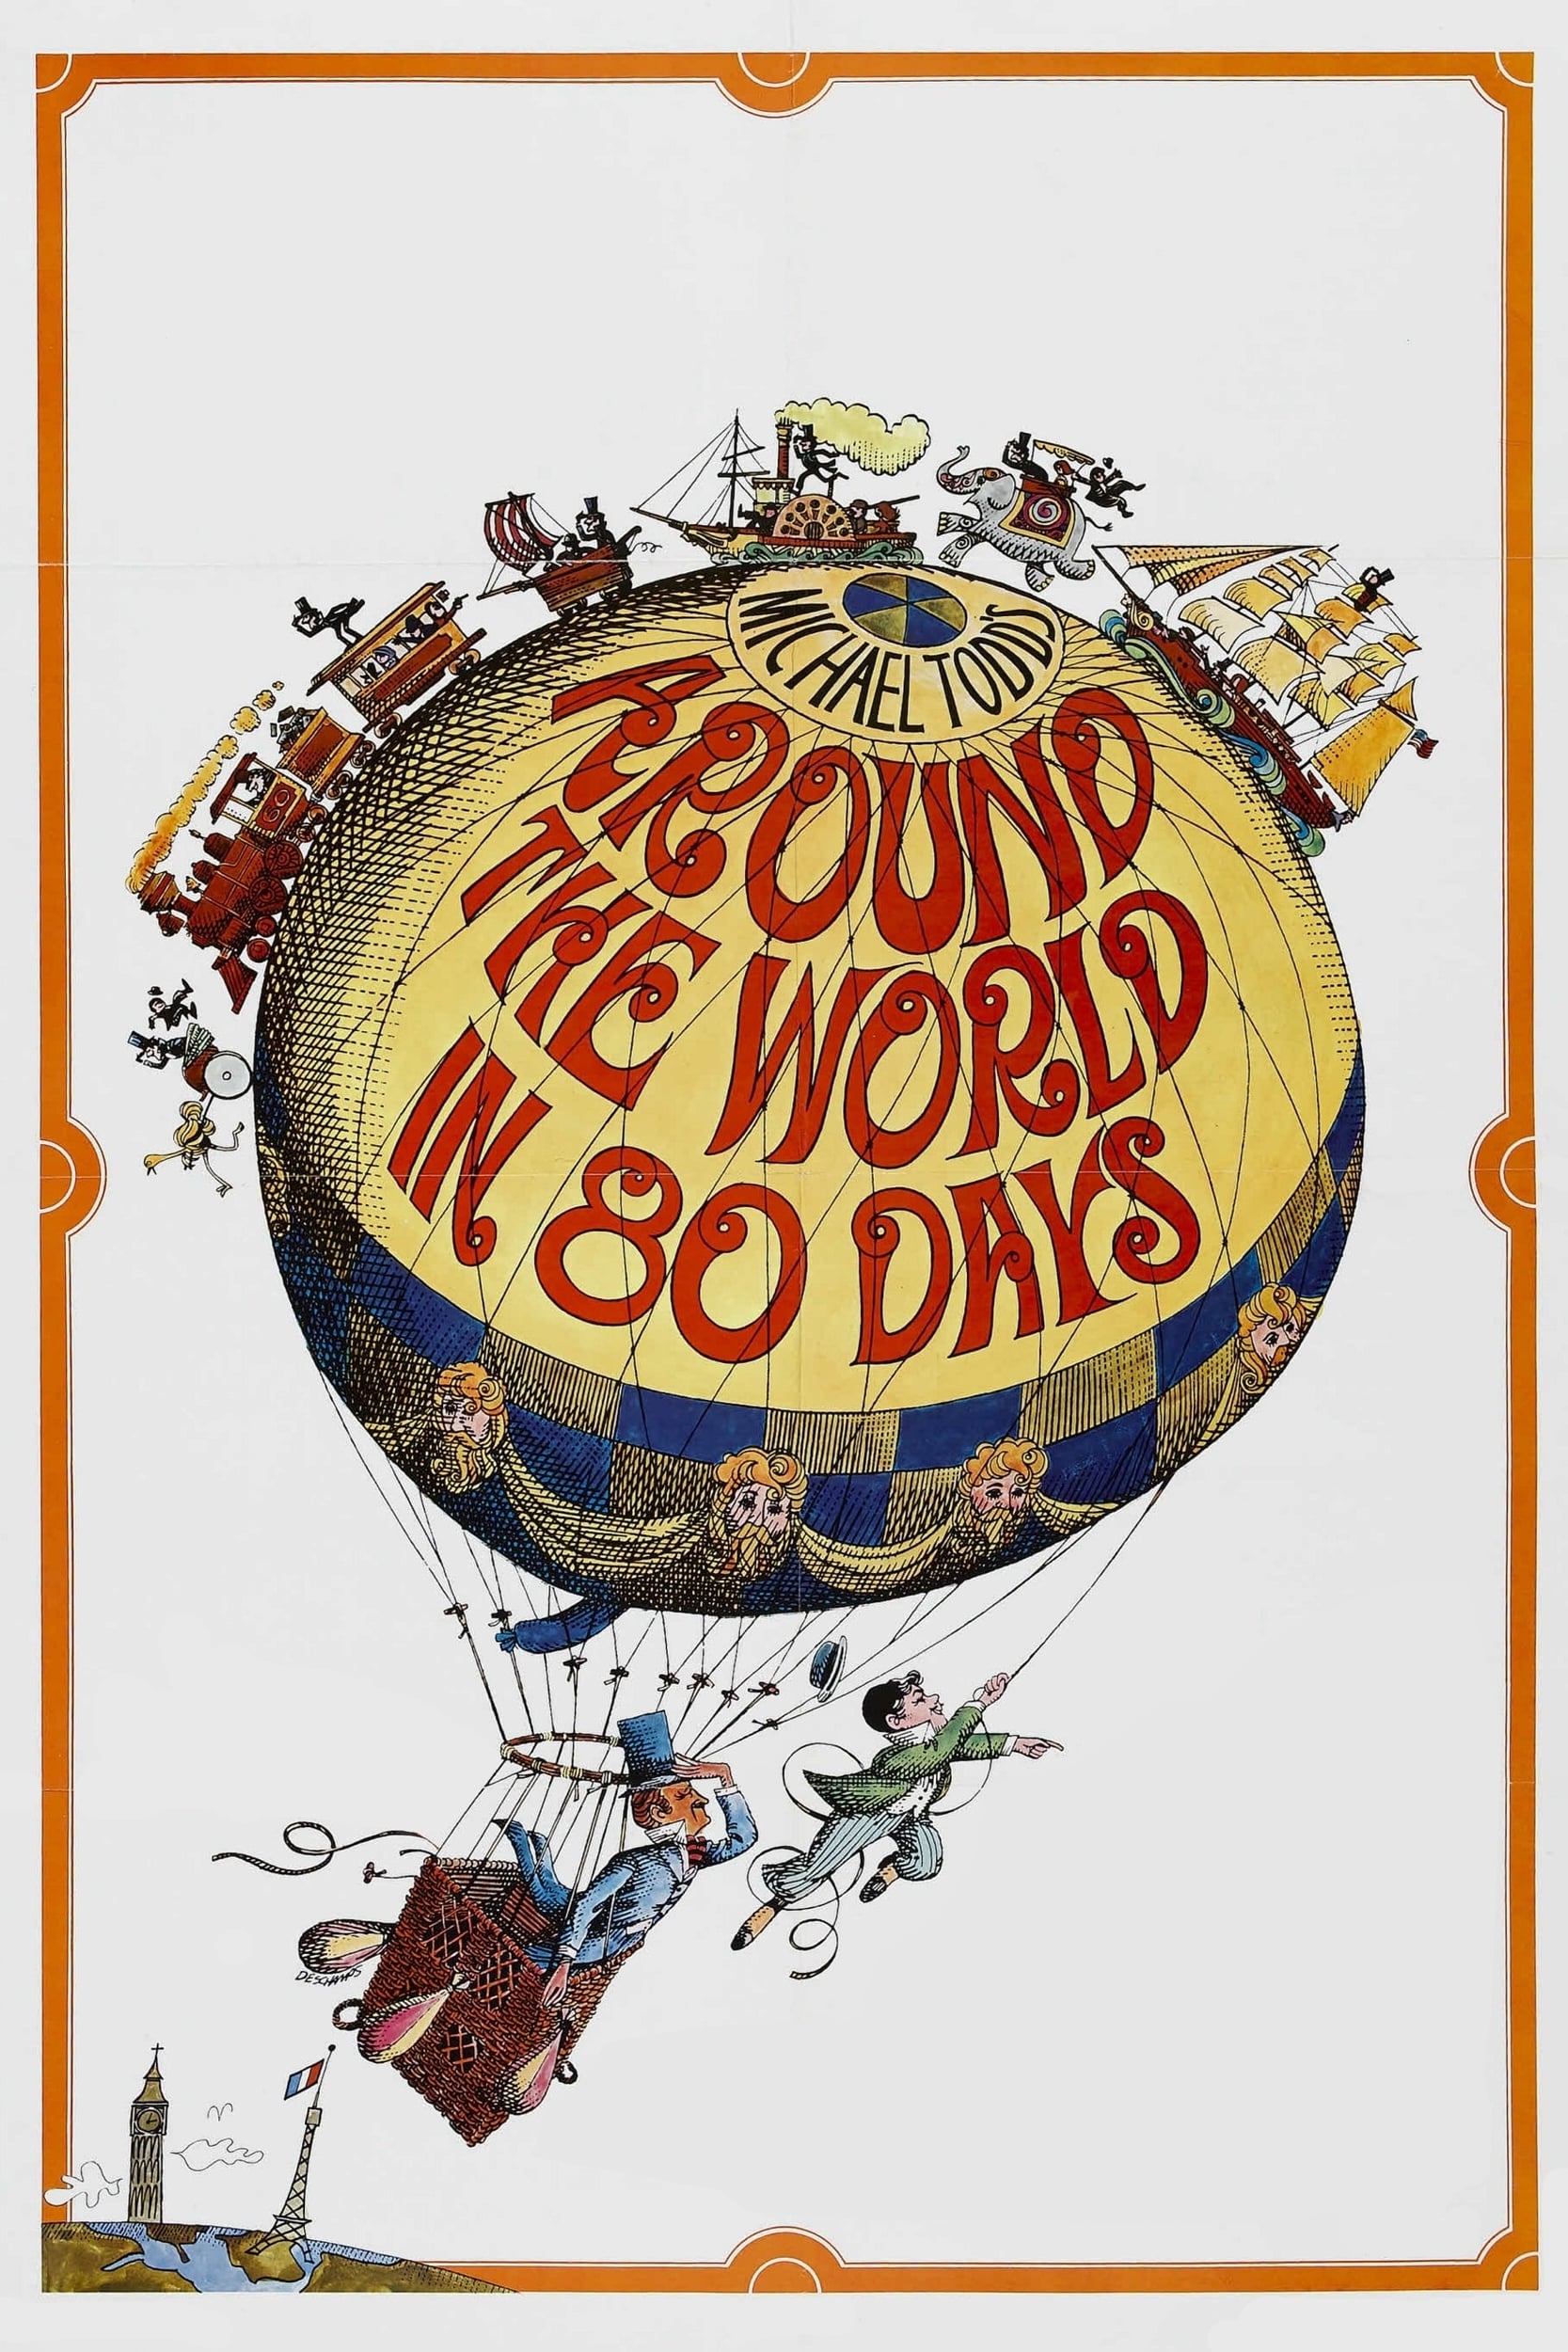 Around the World in 80 Days (1956)